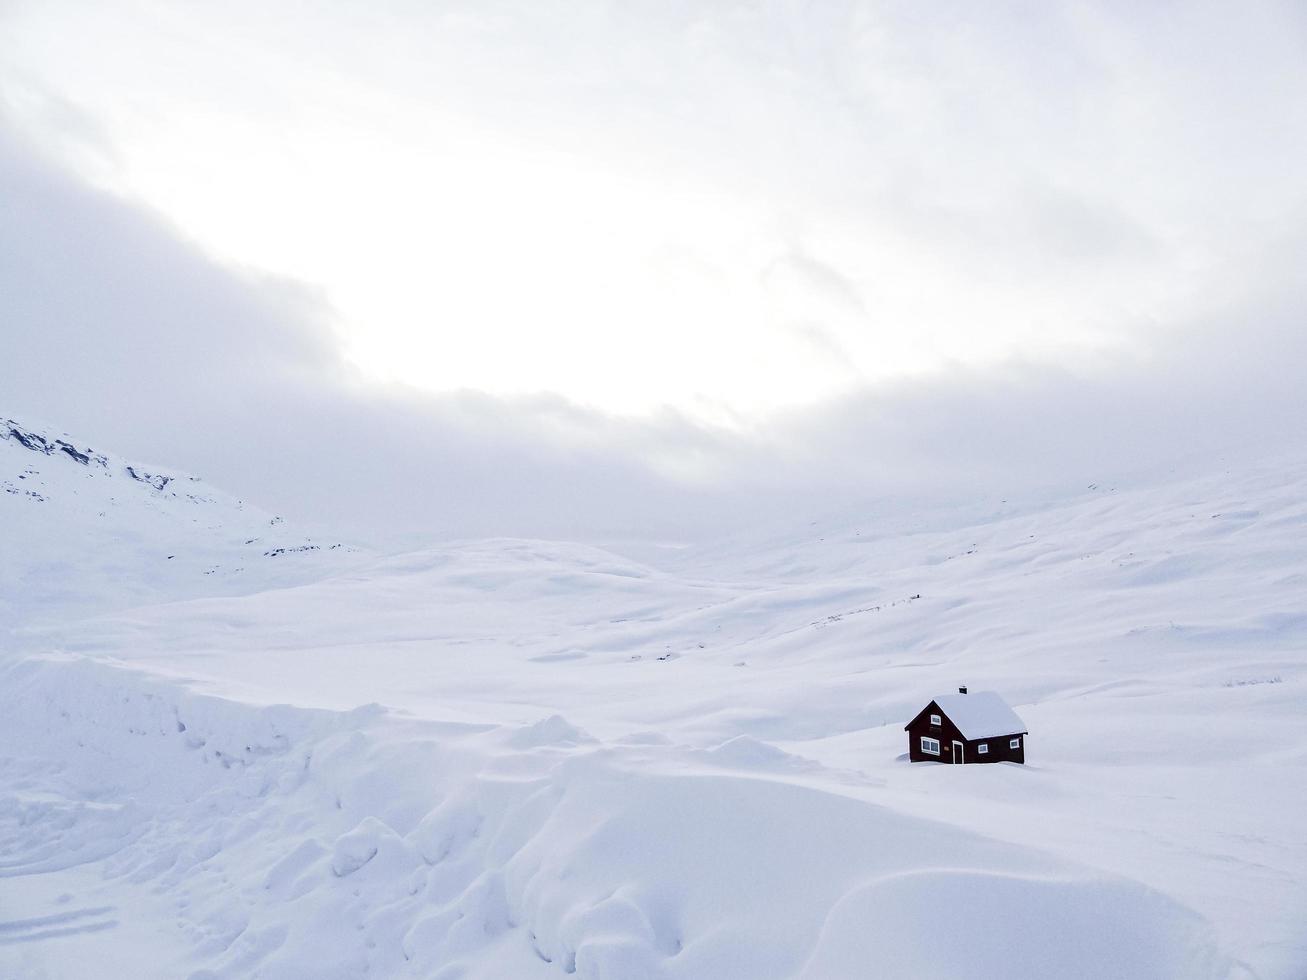 chalet de hutte de maison solitaire couvert de neige, paysage d'hiver blanc, norvège. photo